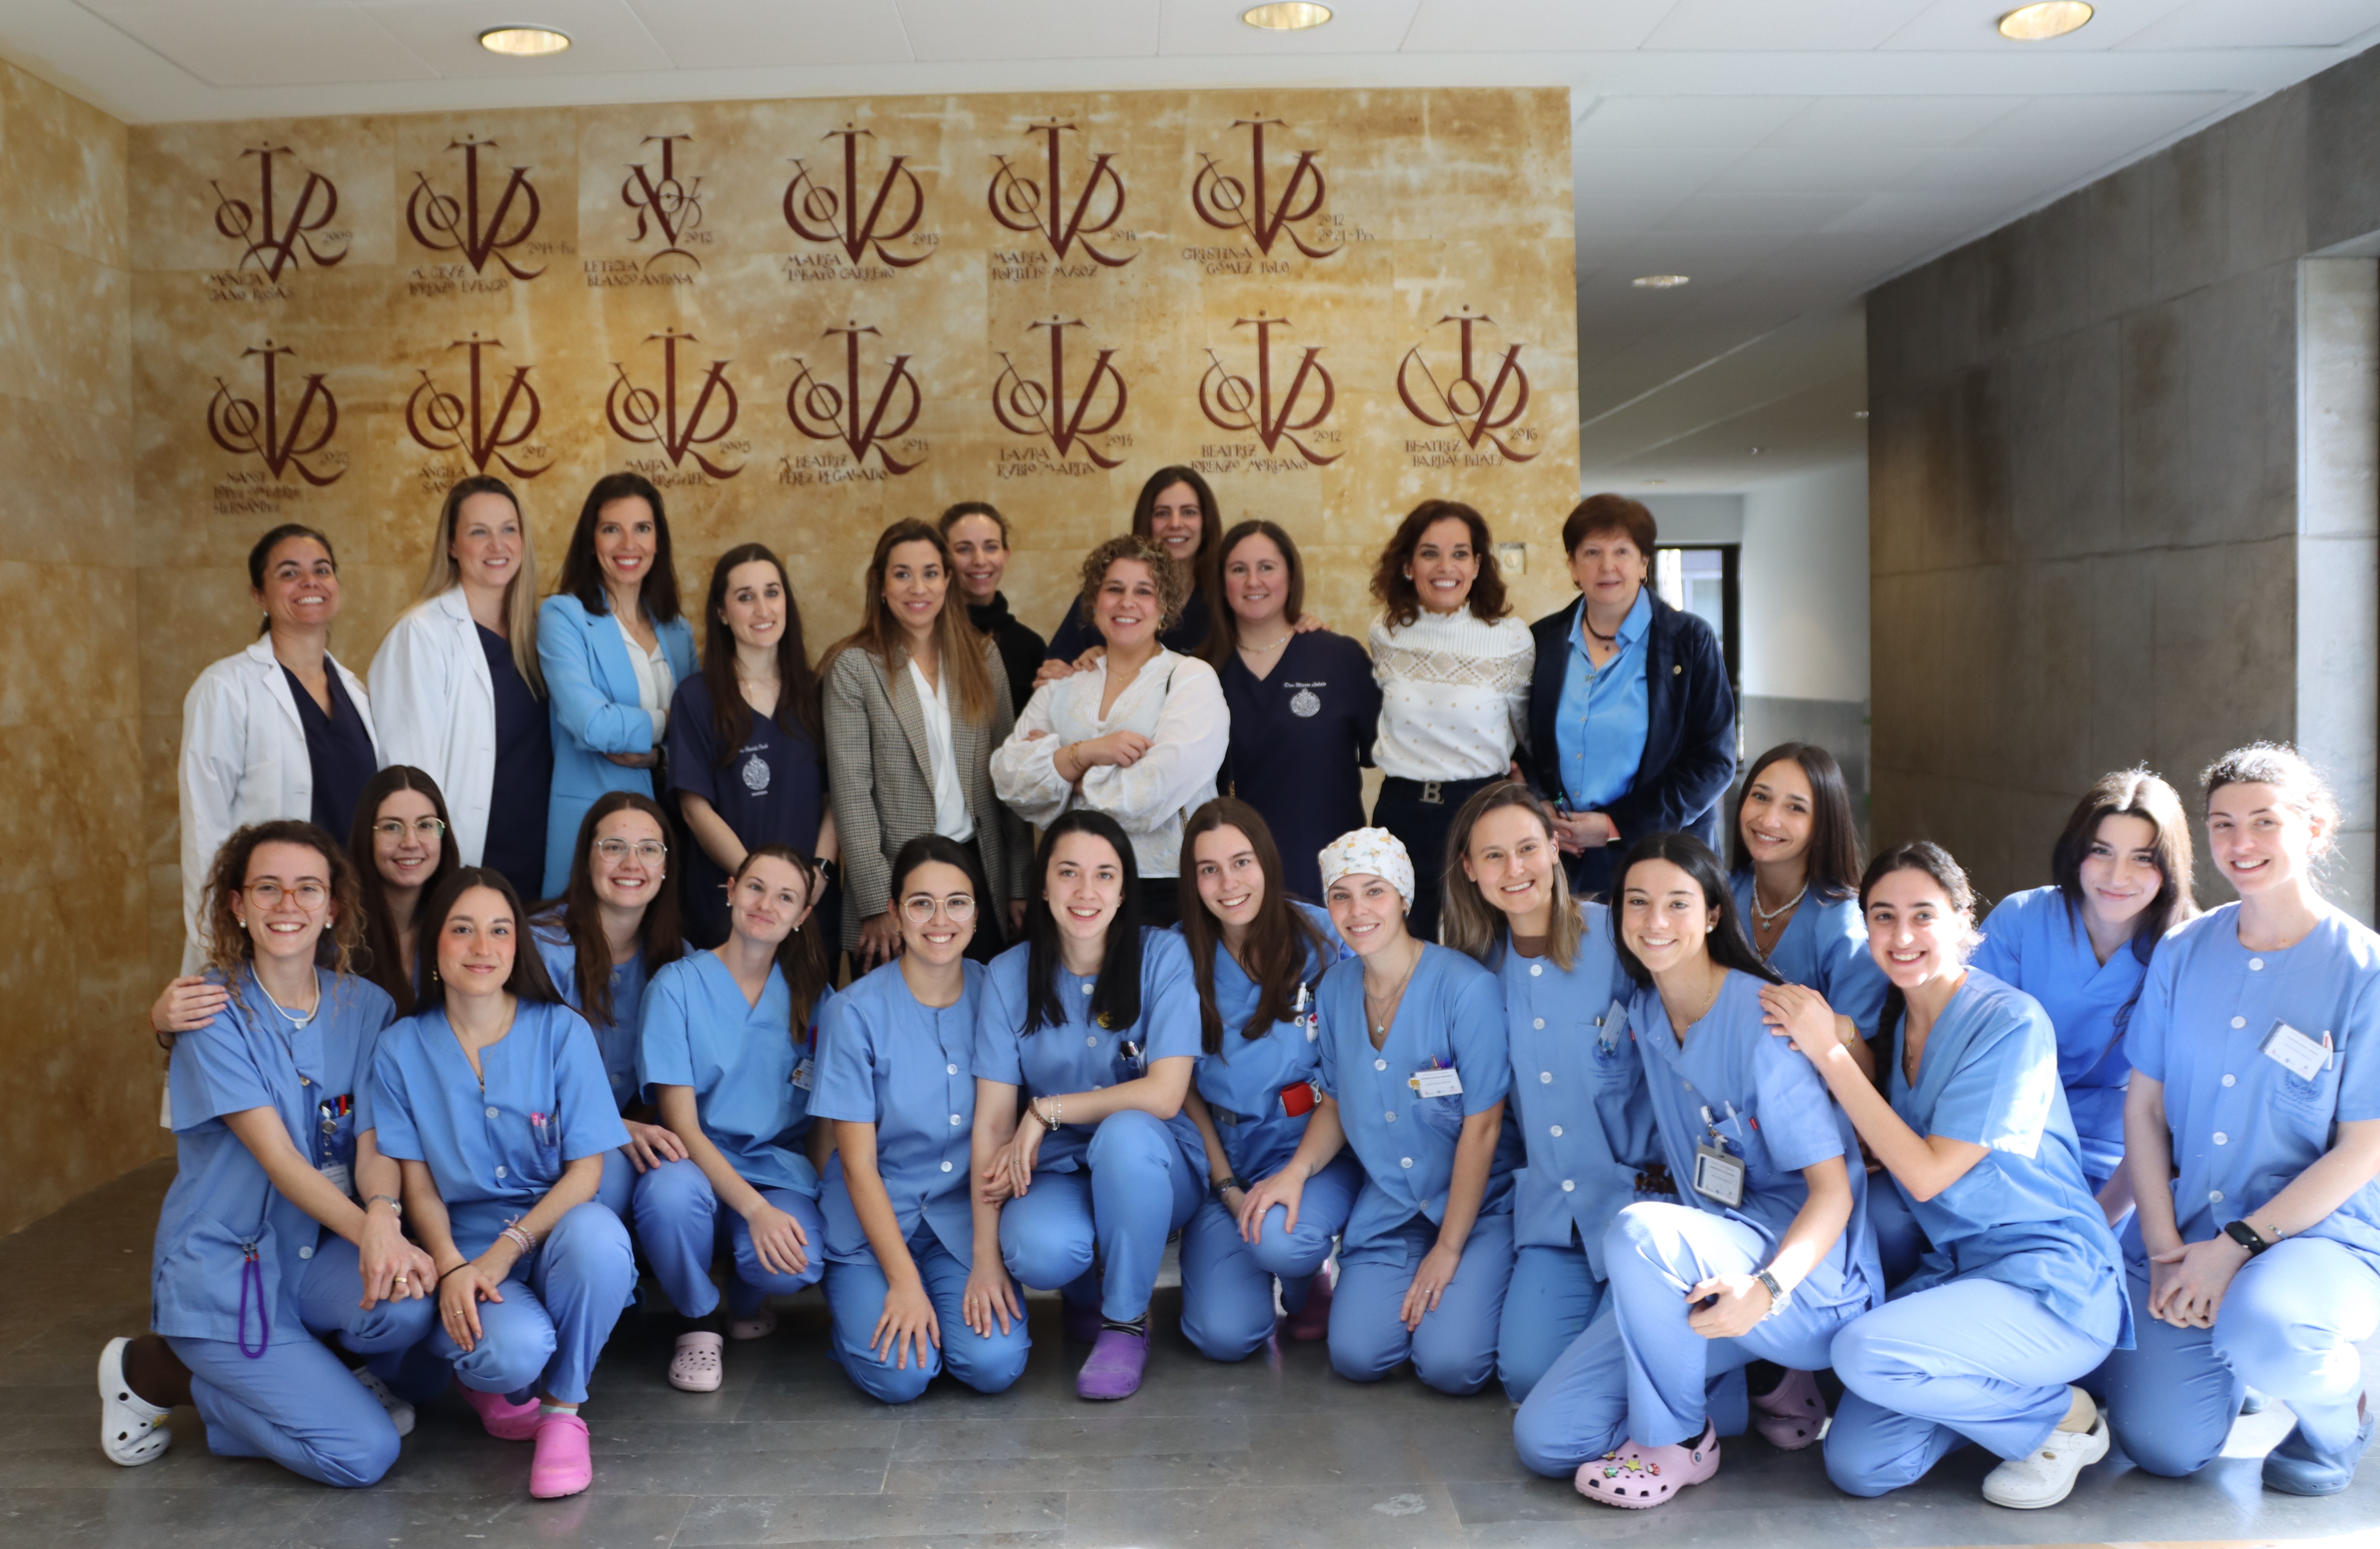  La Clínica Odontológica de la USAL conmemora el 8M con el descubrimiento de los vítores de 13 doctoras